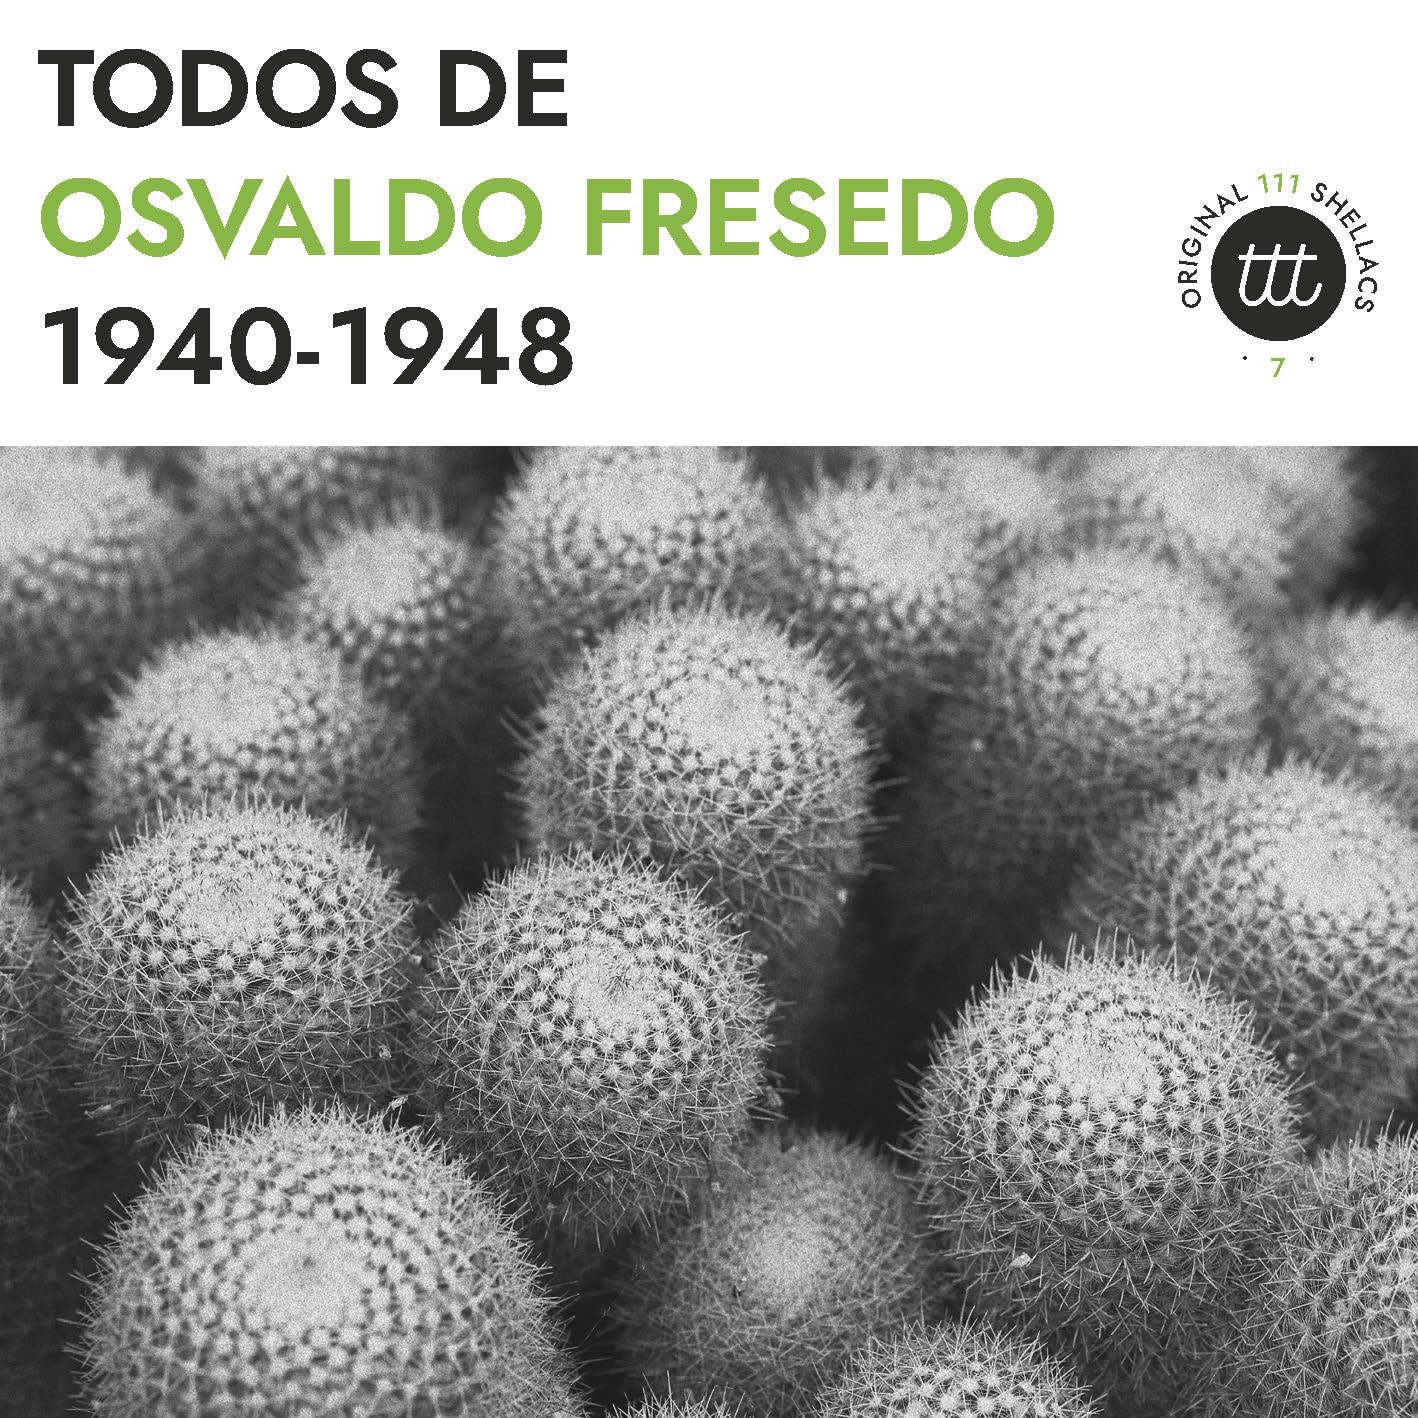 Tango Time Travel - Osvaldo Fresedo 1940-1948